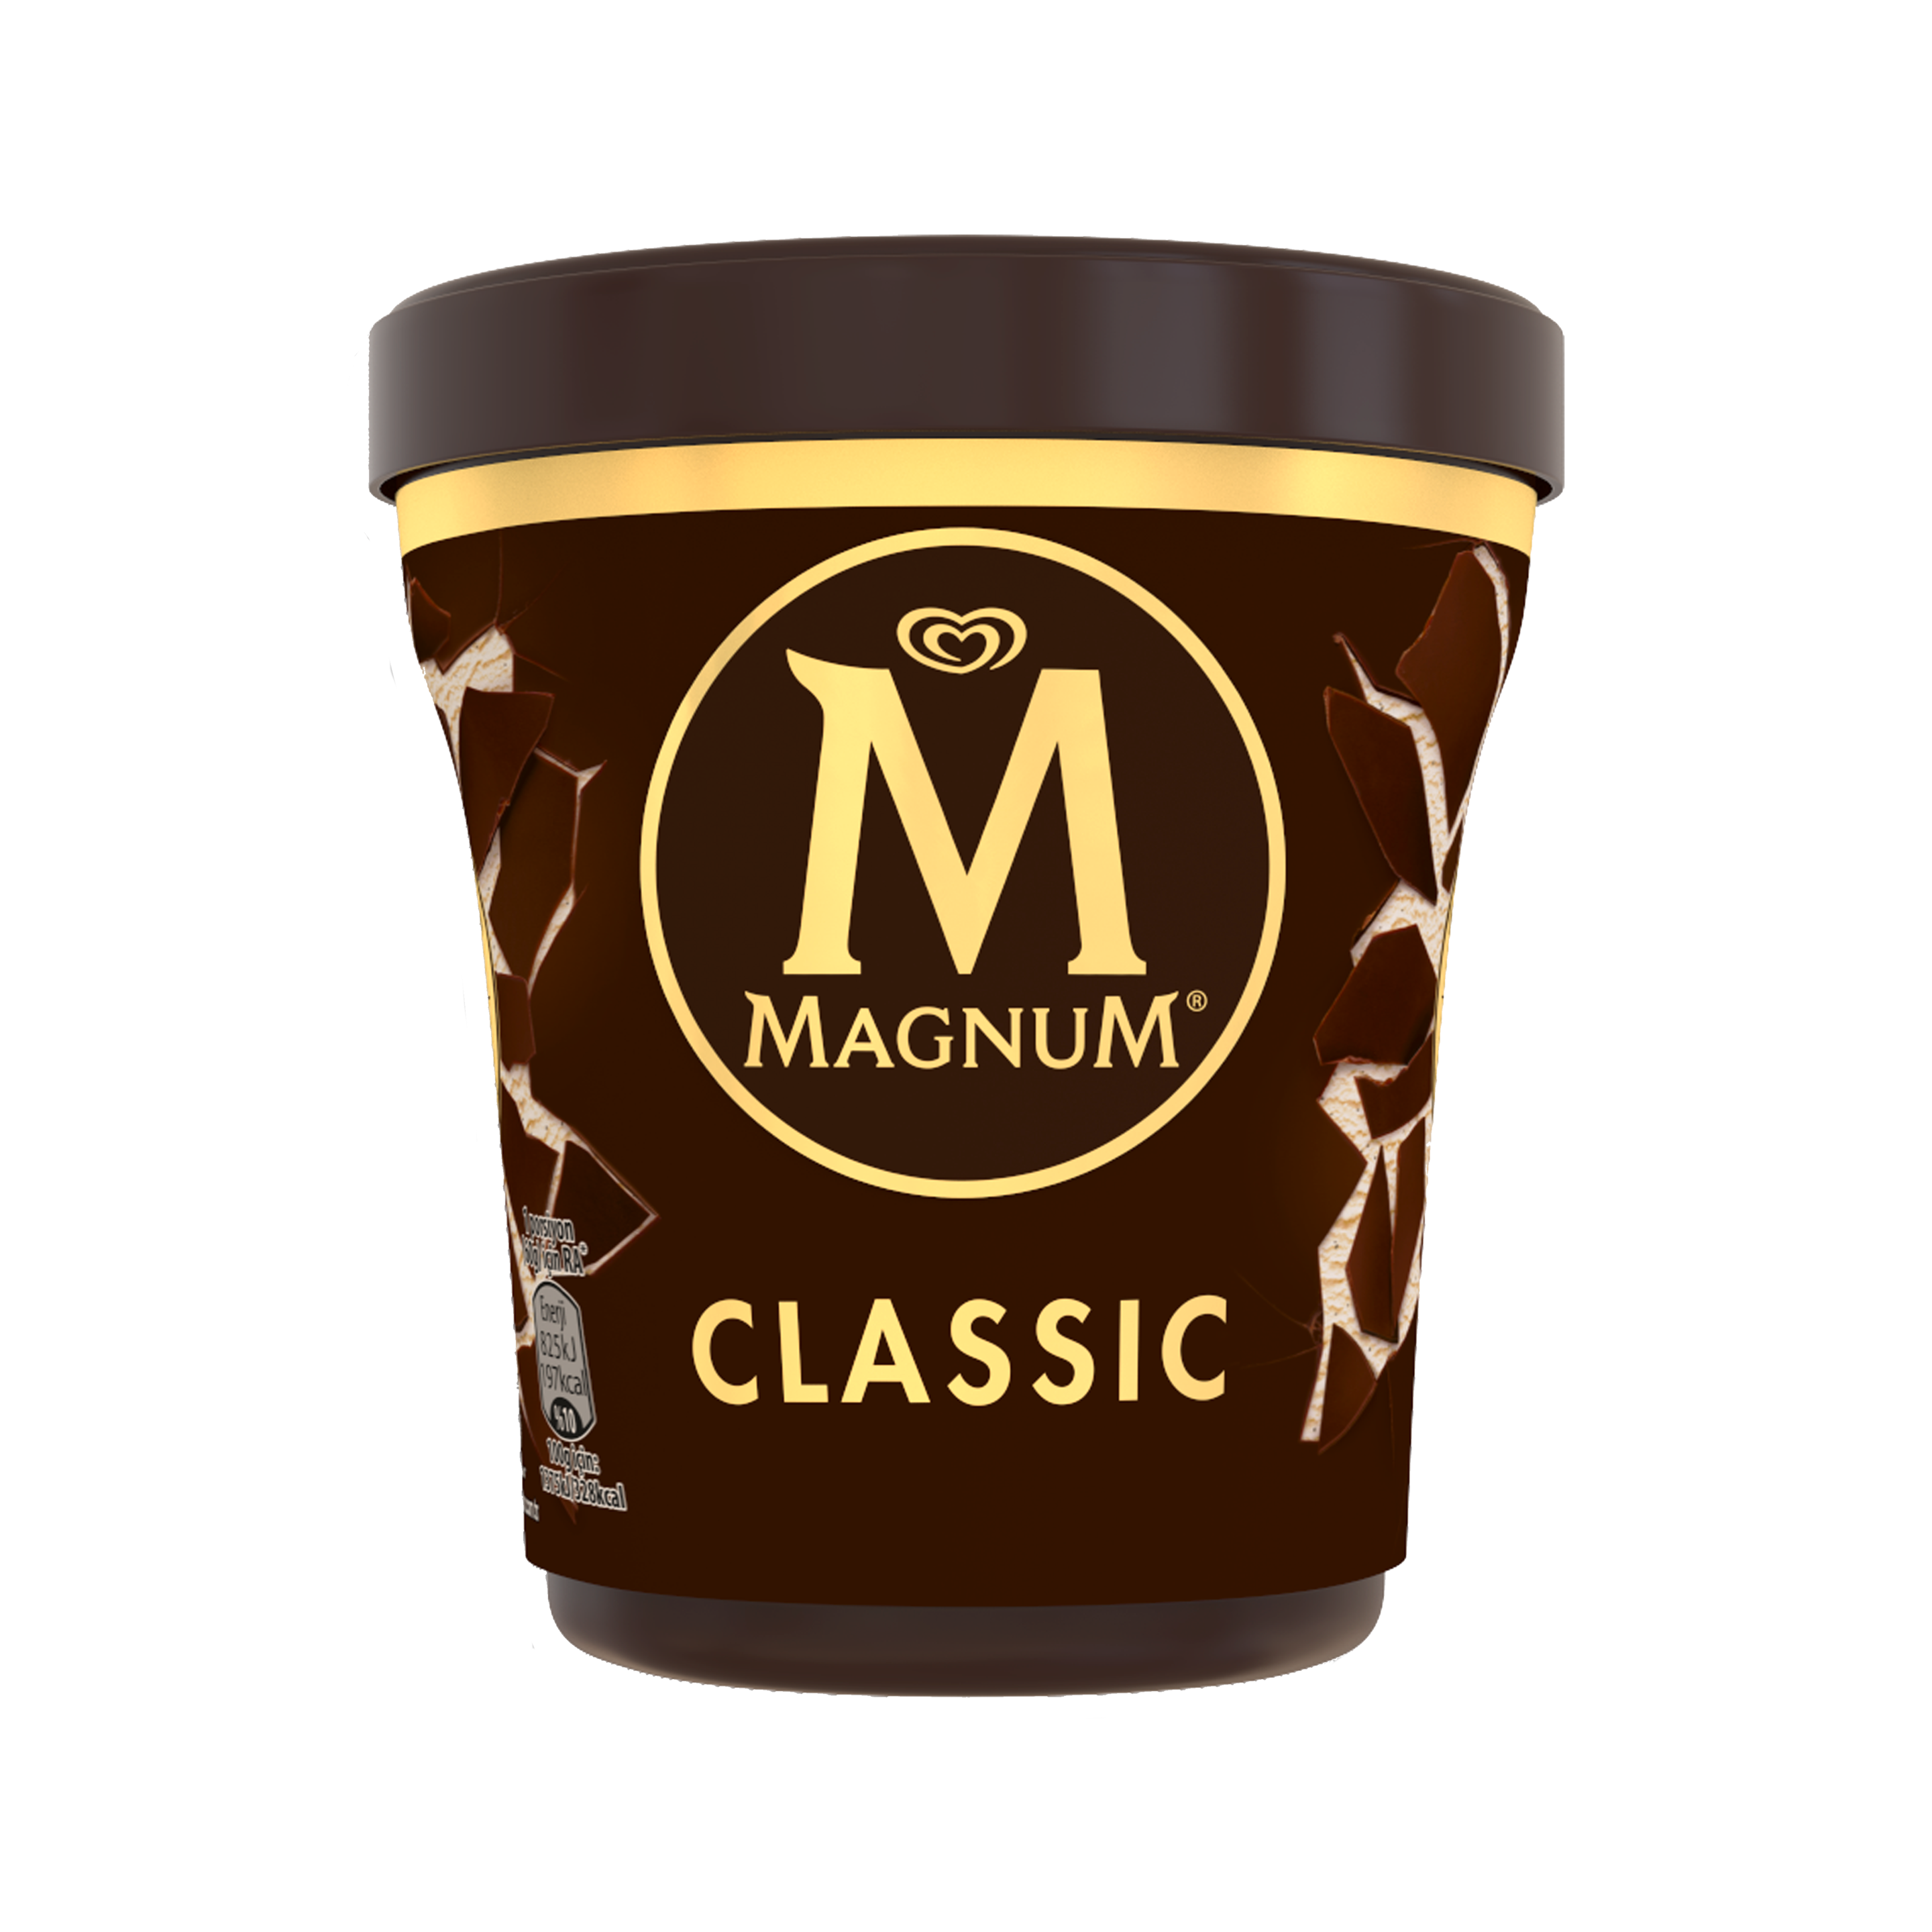 Magnum classic pint